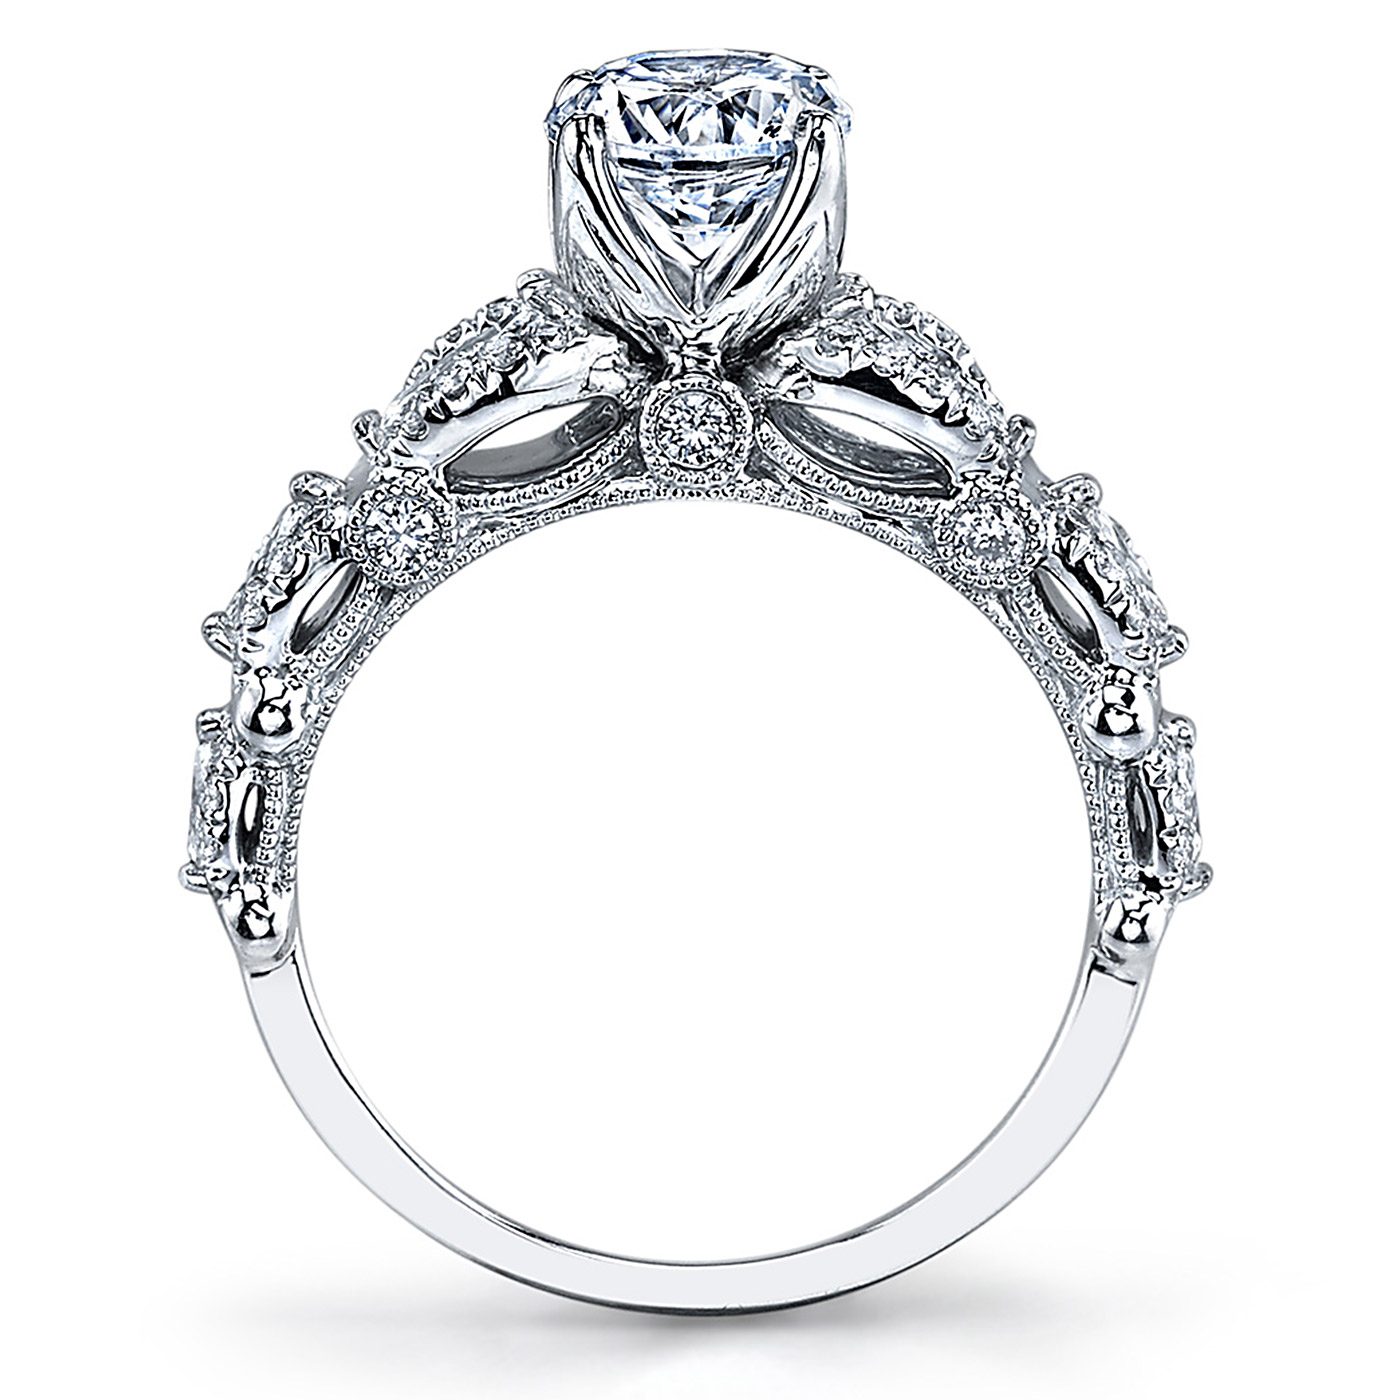 Parade Hemera Bridal R3908 18 Karat Diamond Engagement Ring